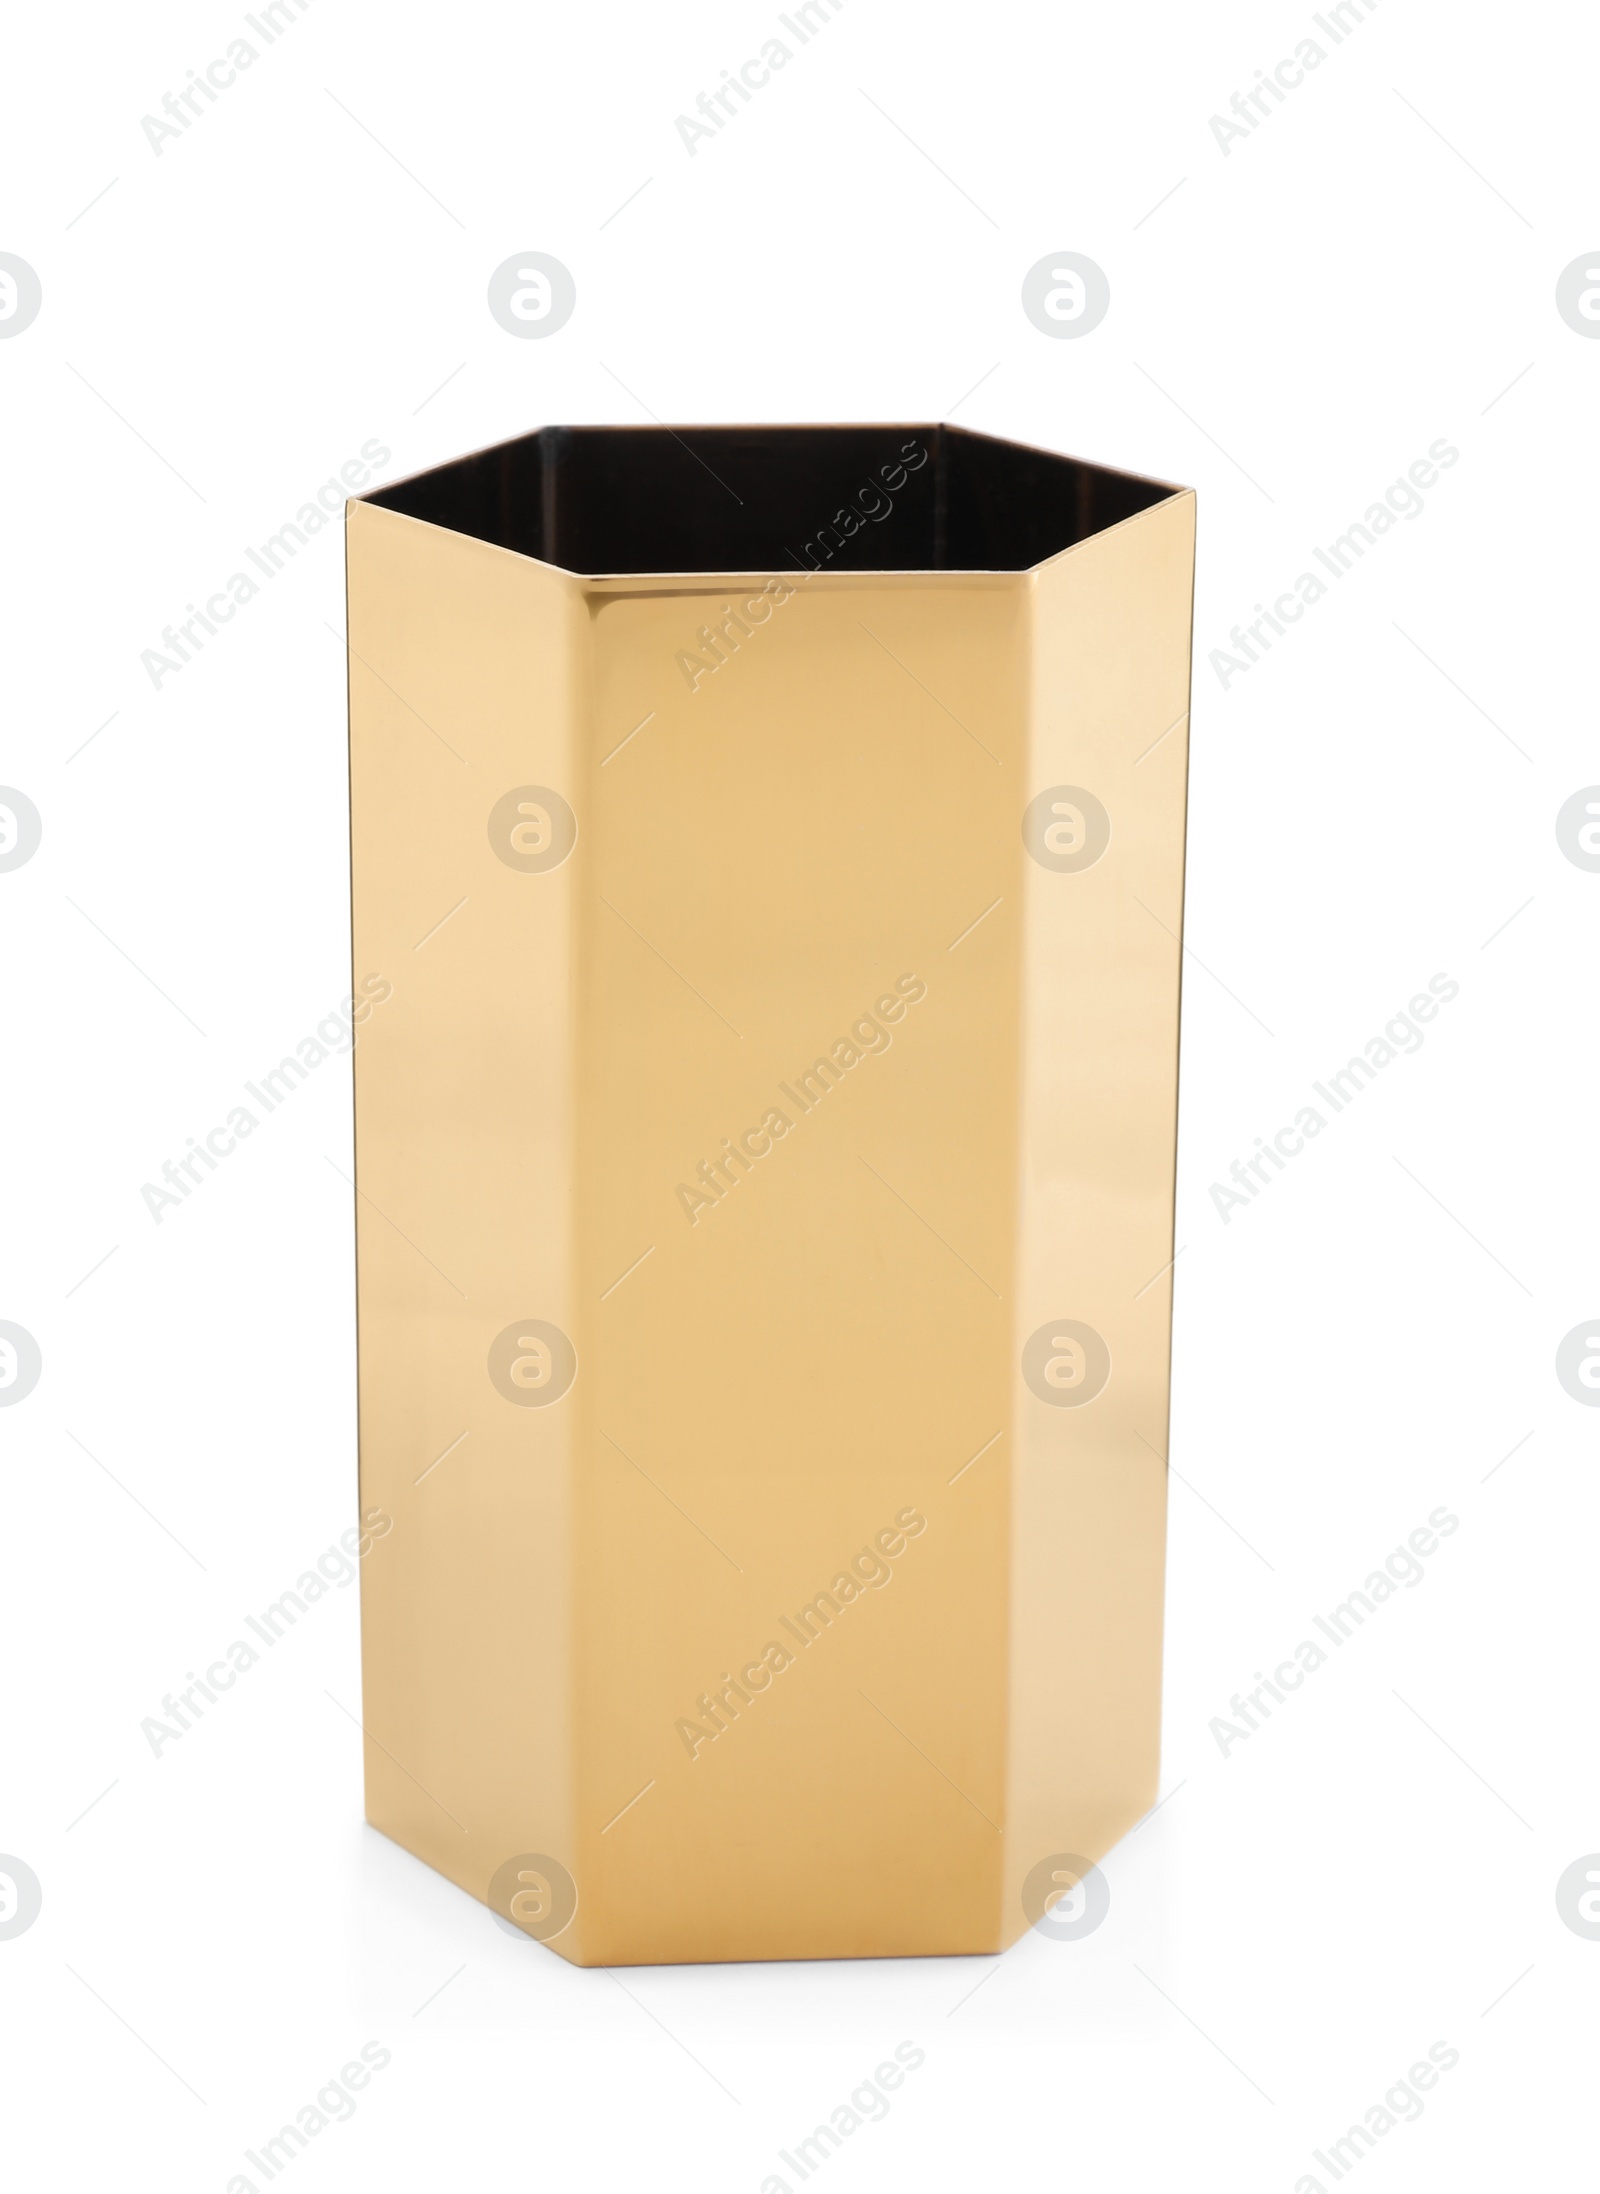 Photo of Empty stylish golden holder isolated on white